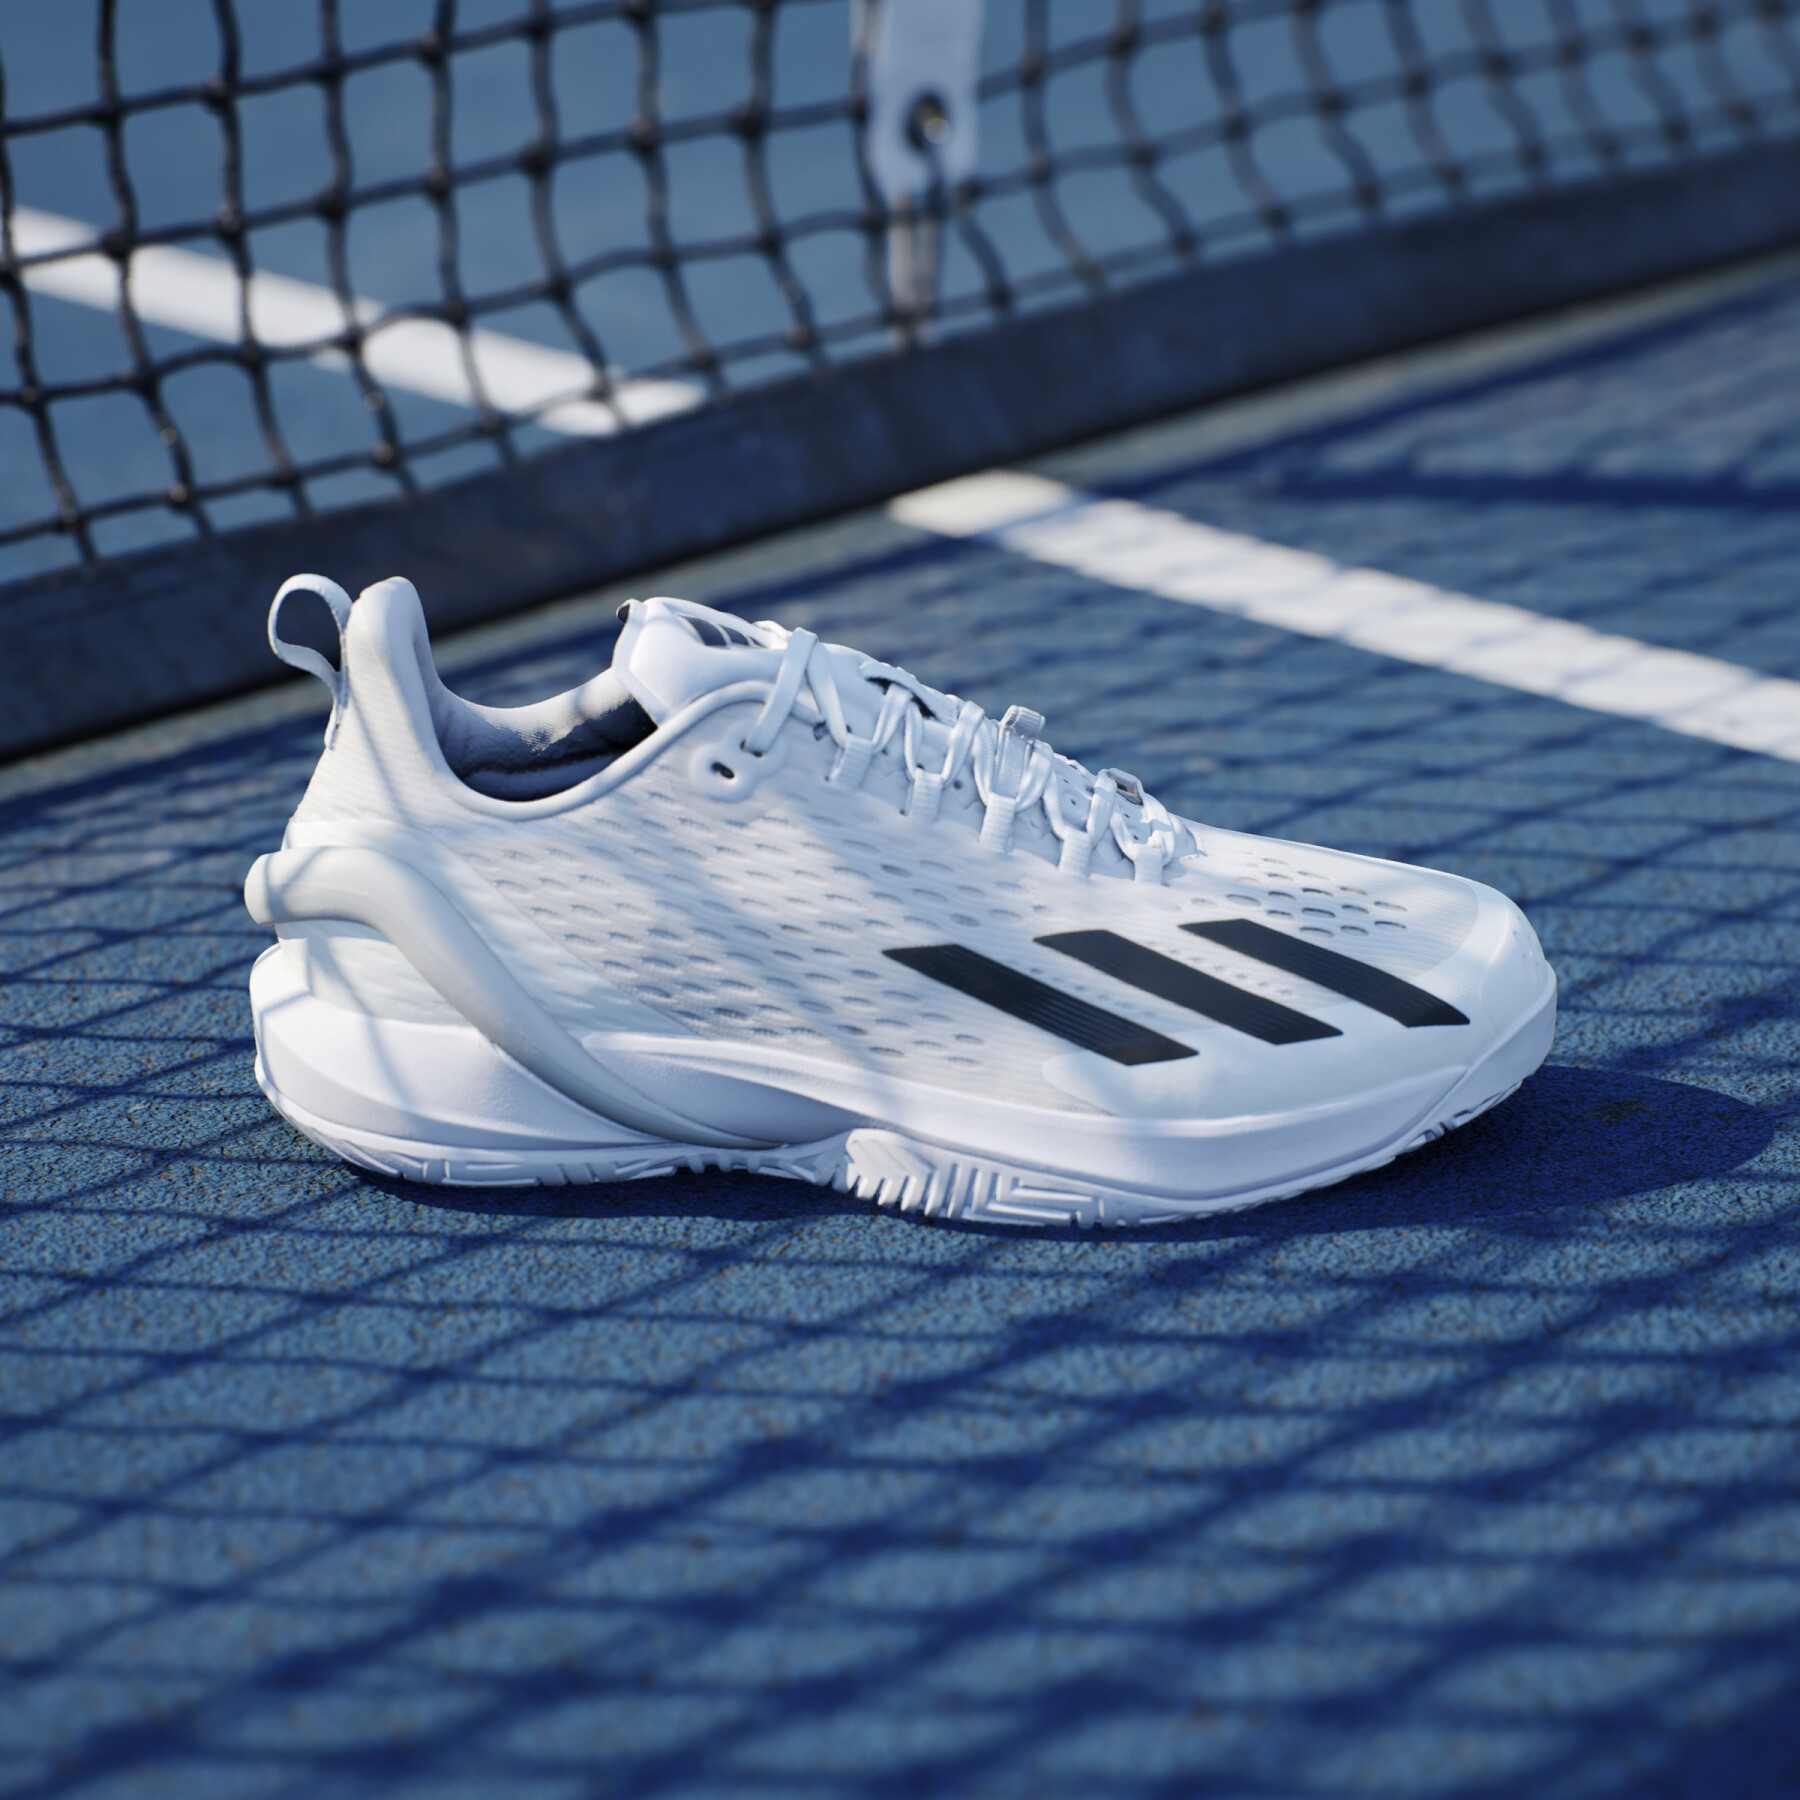 Scarpe da tennis adidas Adizero Cybersonic